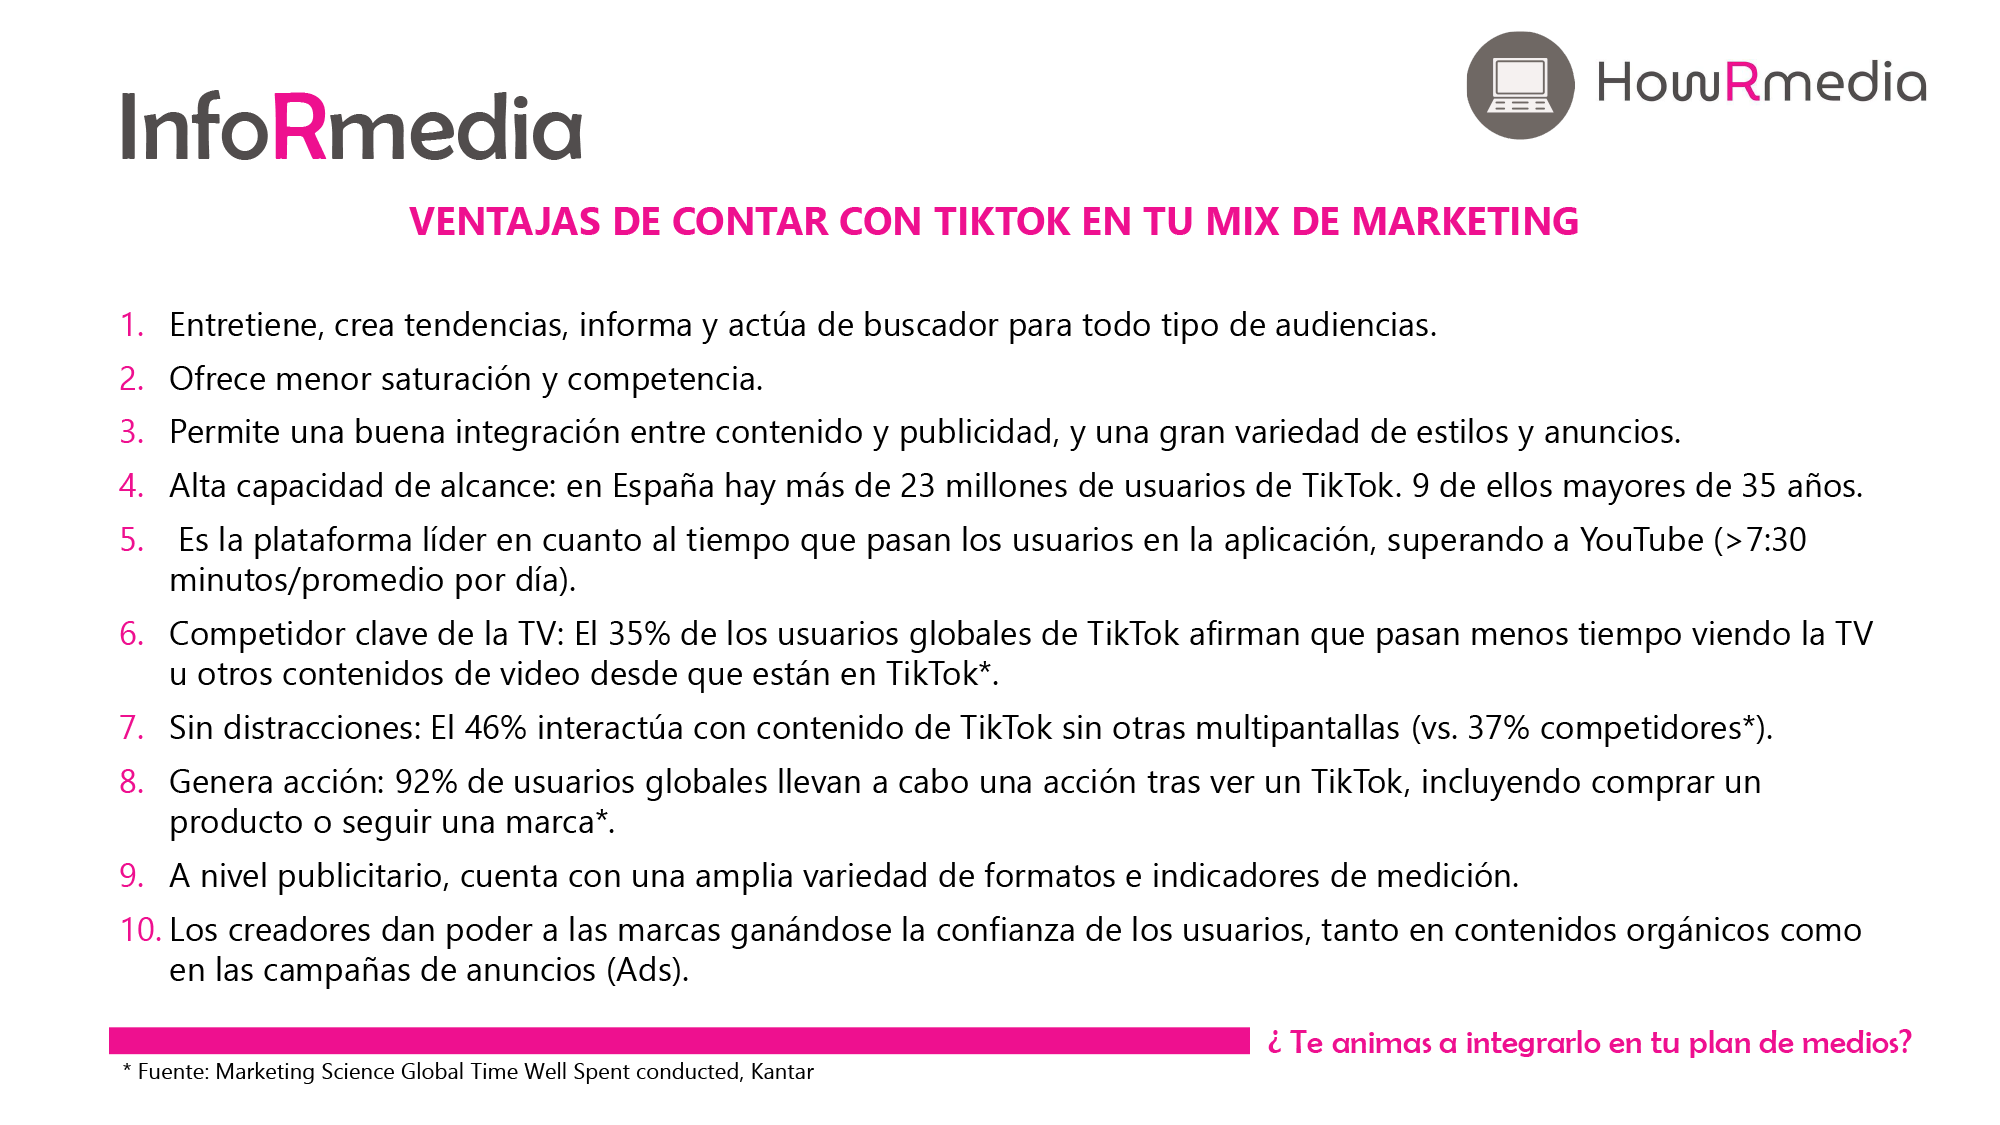 Ventajas de Contar con Tiktok en Marketing